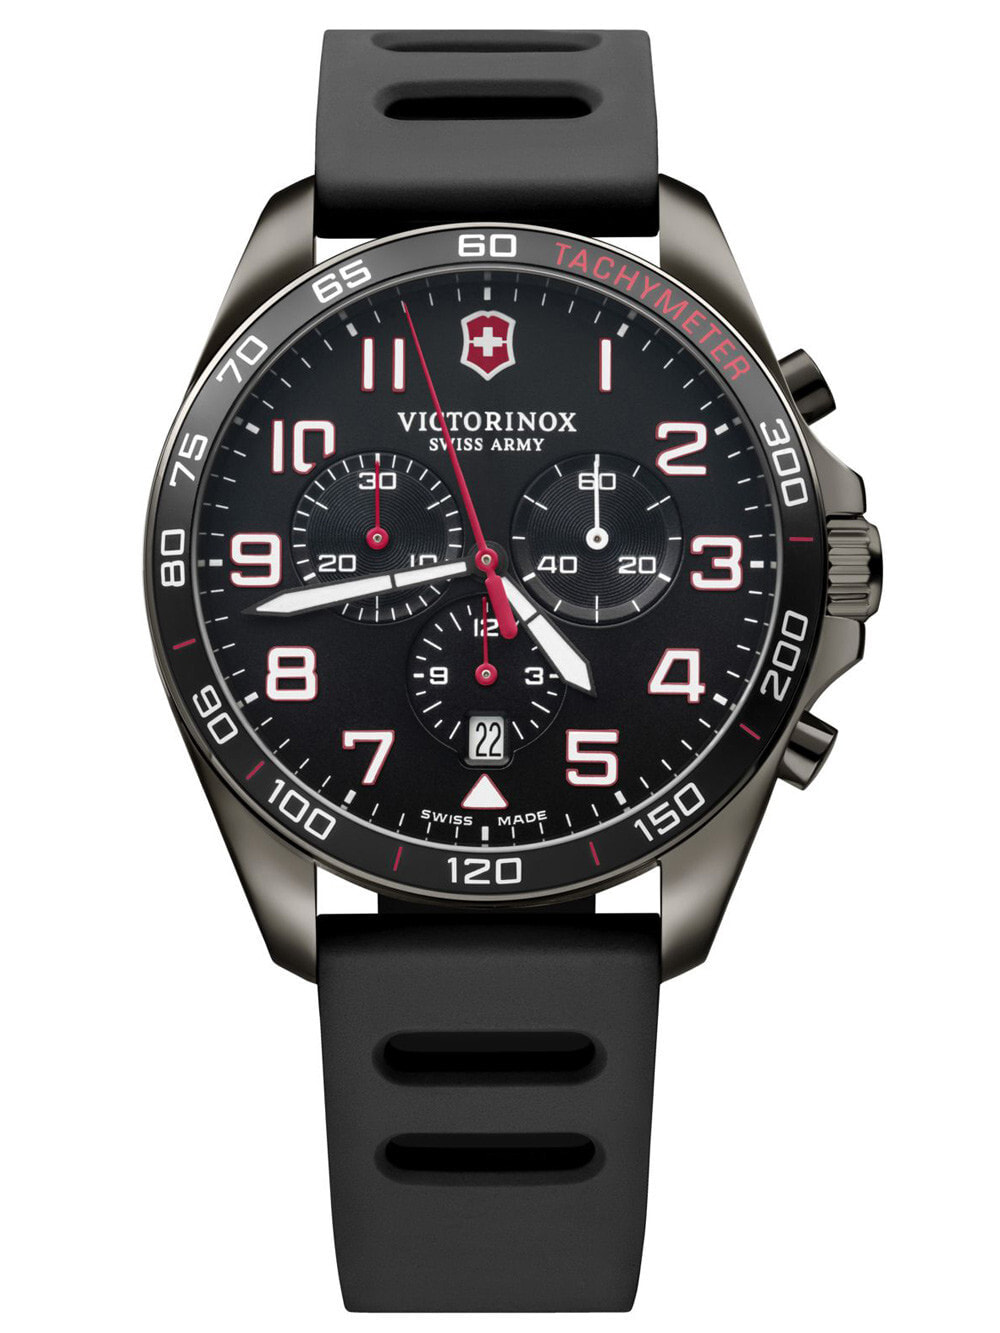 Мужские наручные часы с черным силиконовым ремешком  Victorinox 241889 Field Force Sport chrono 41mm 10ATM